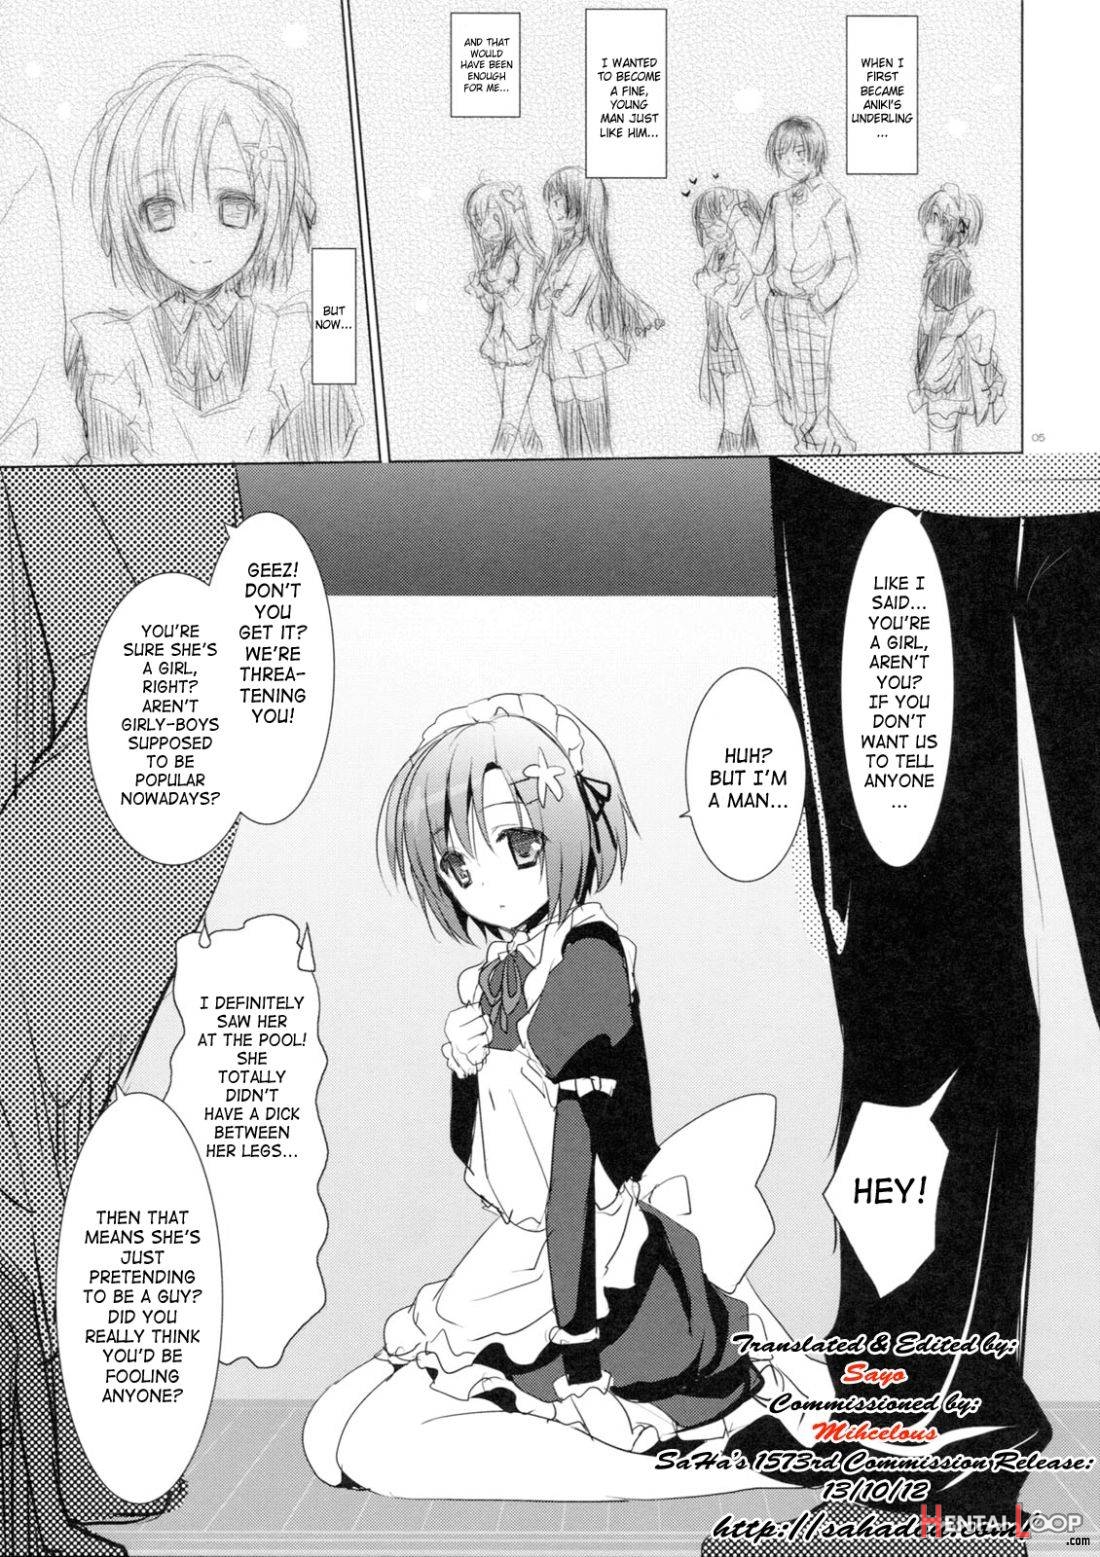 Sayonara, Aniki page 2